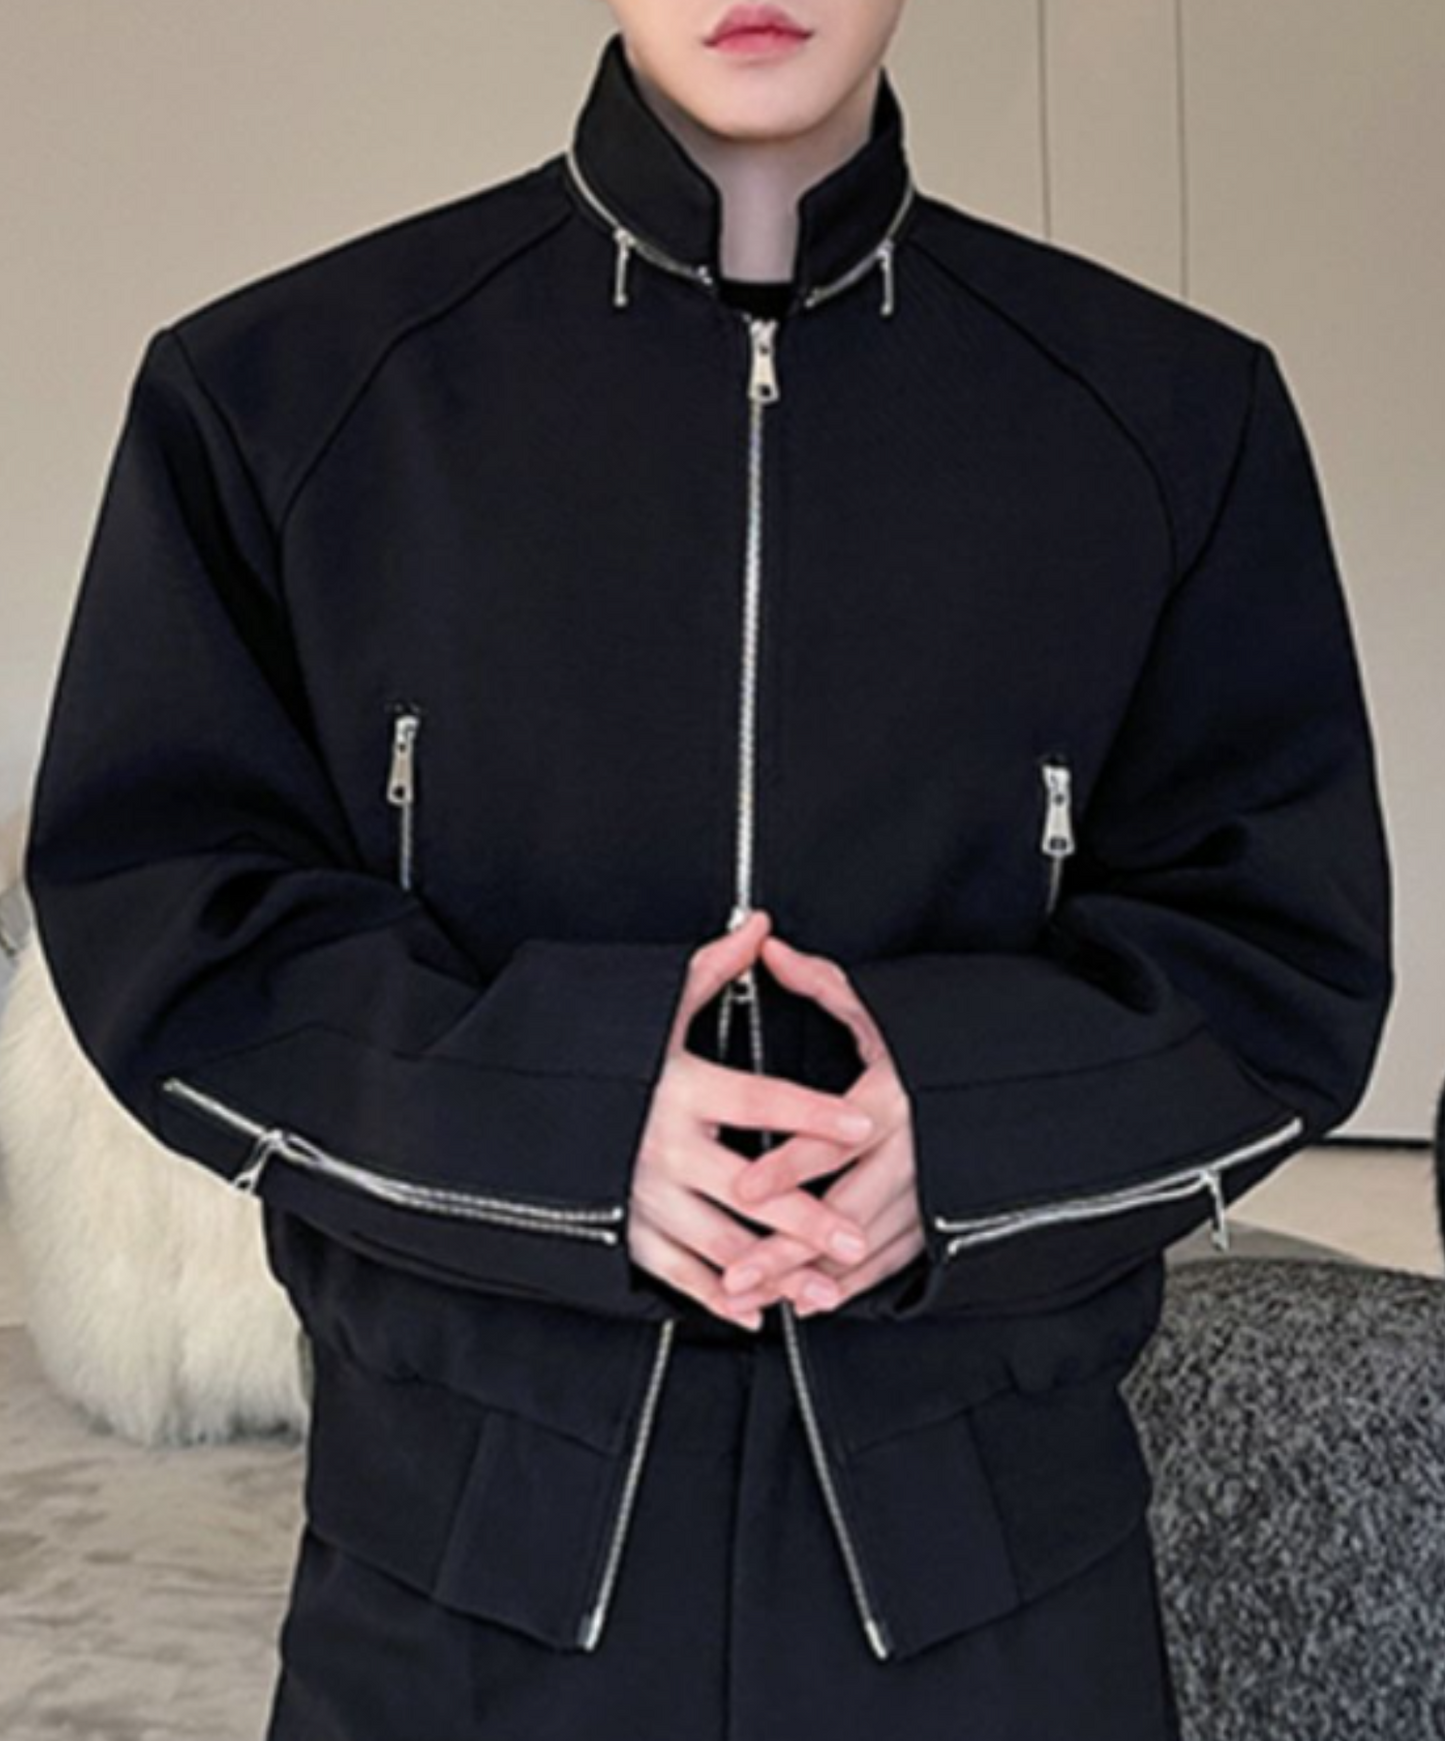 double zip up stand collar casual jacket EN1688